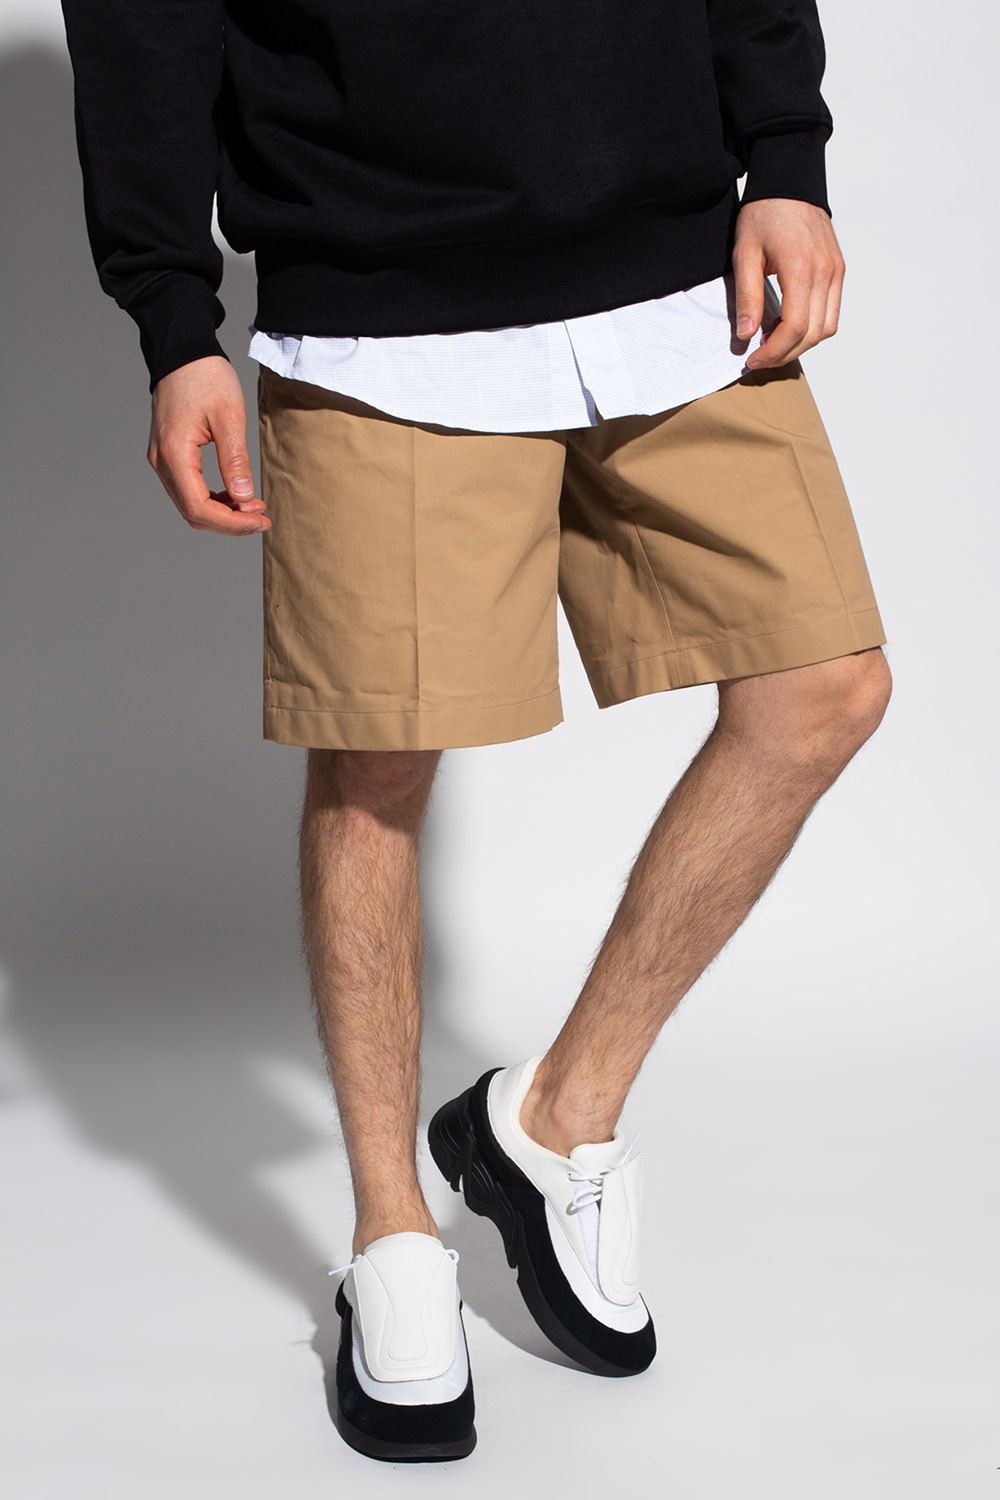 kage Bedstefar punktum Acne Studios Pleat-front shorts | Men's Clothing | Vitkac